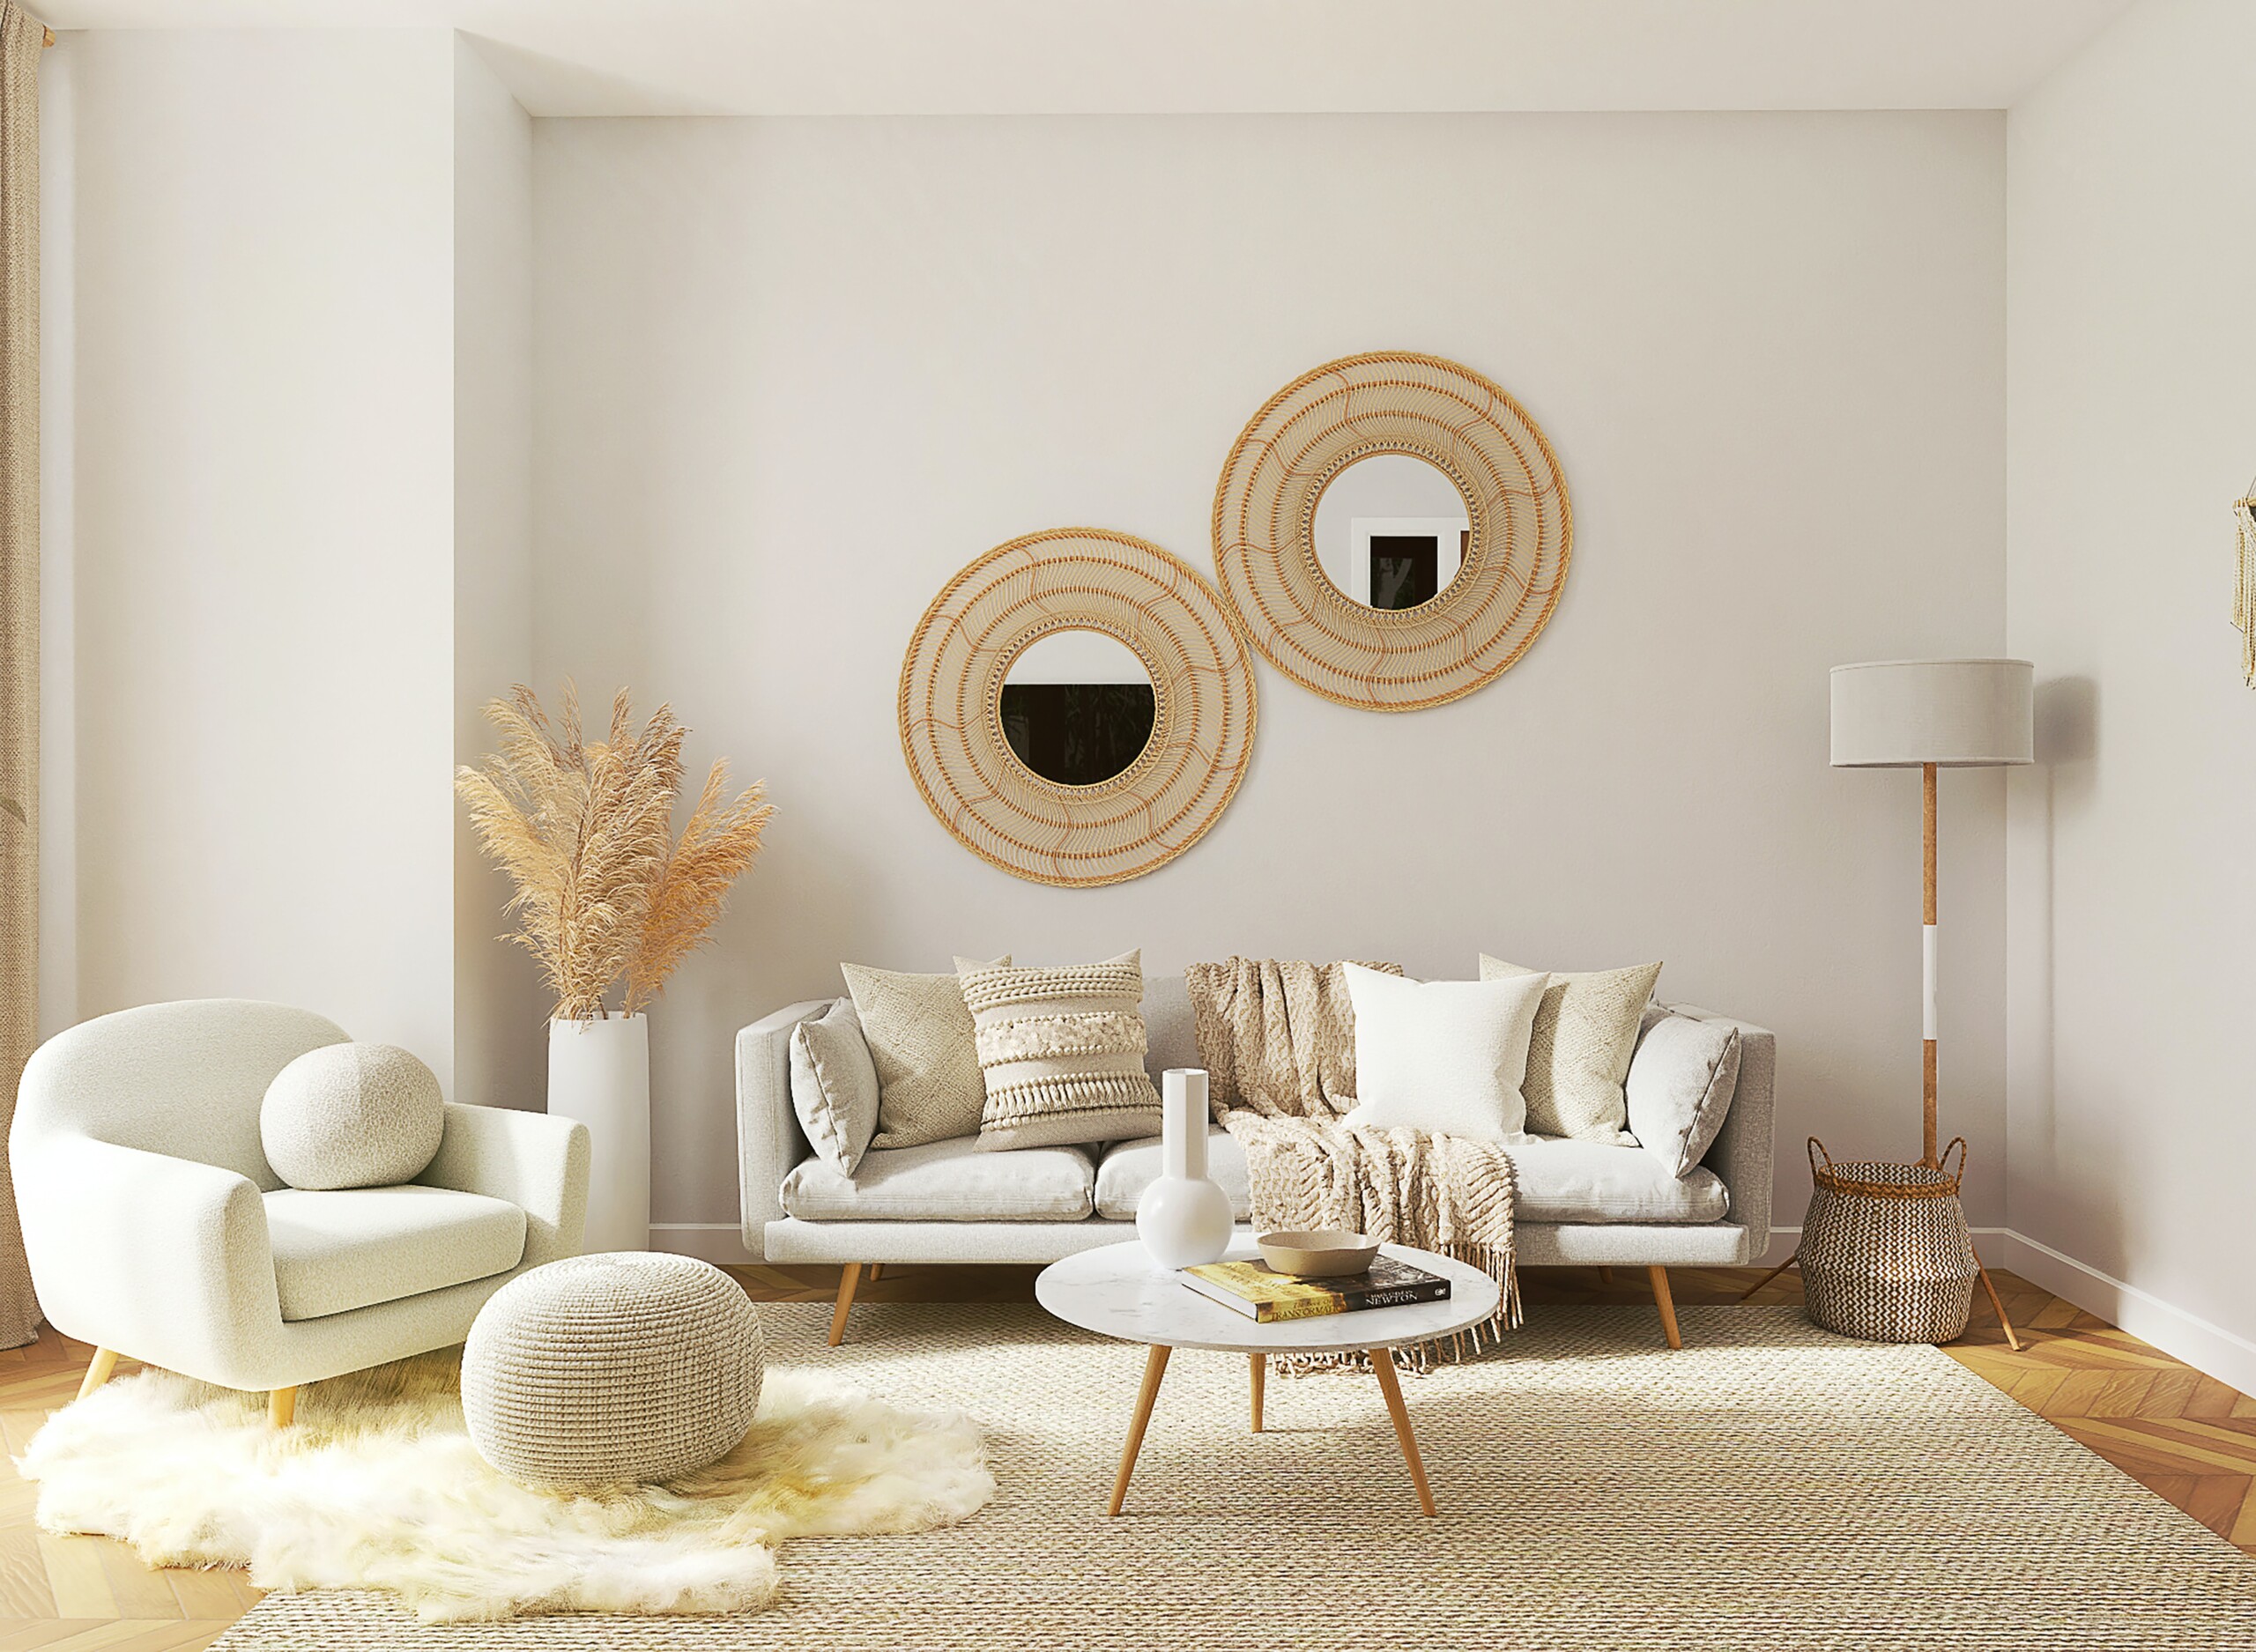 Pinterest Organization Tips For Living Room